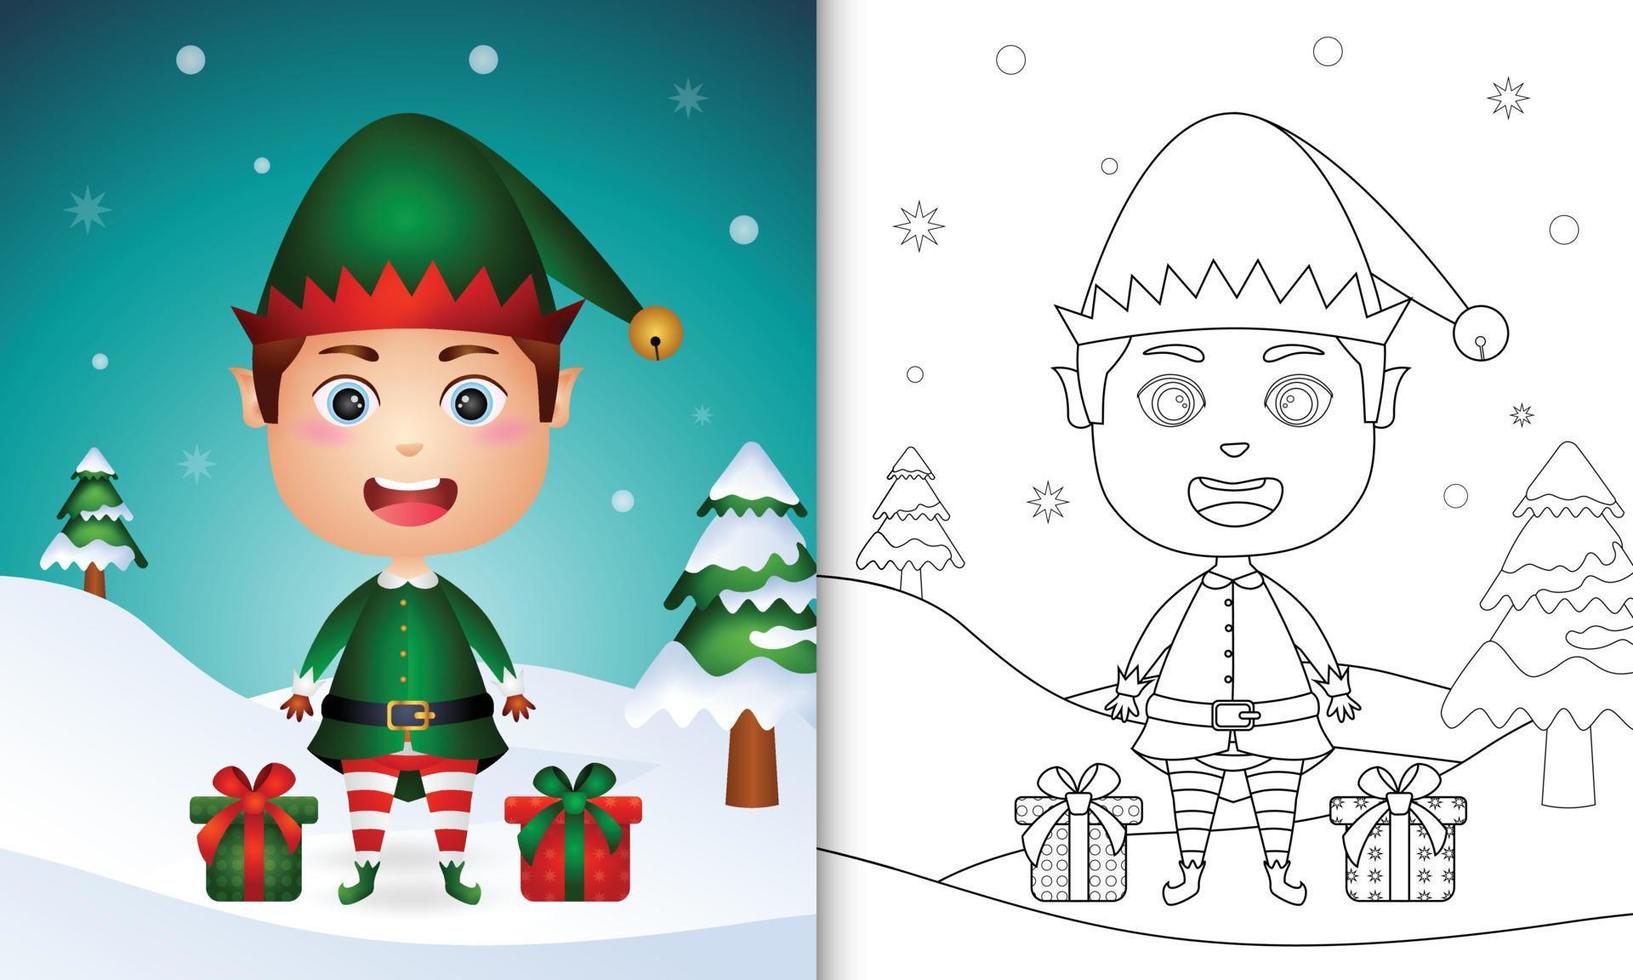 kleurboek met een schattige jongen elf kerstfiguren met een zak geschenken vector